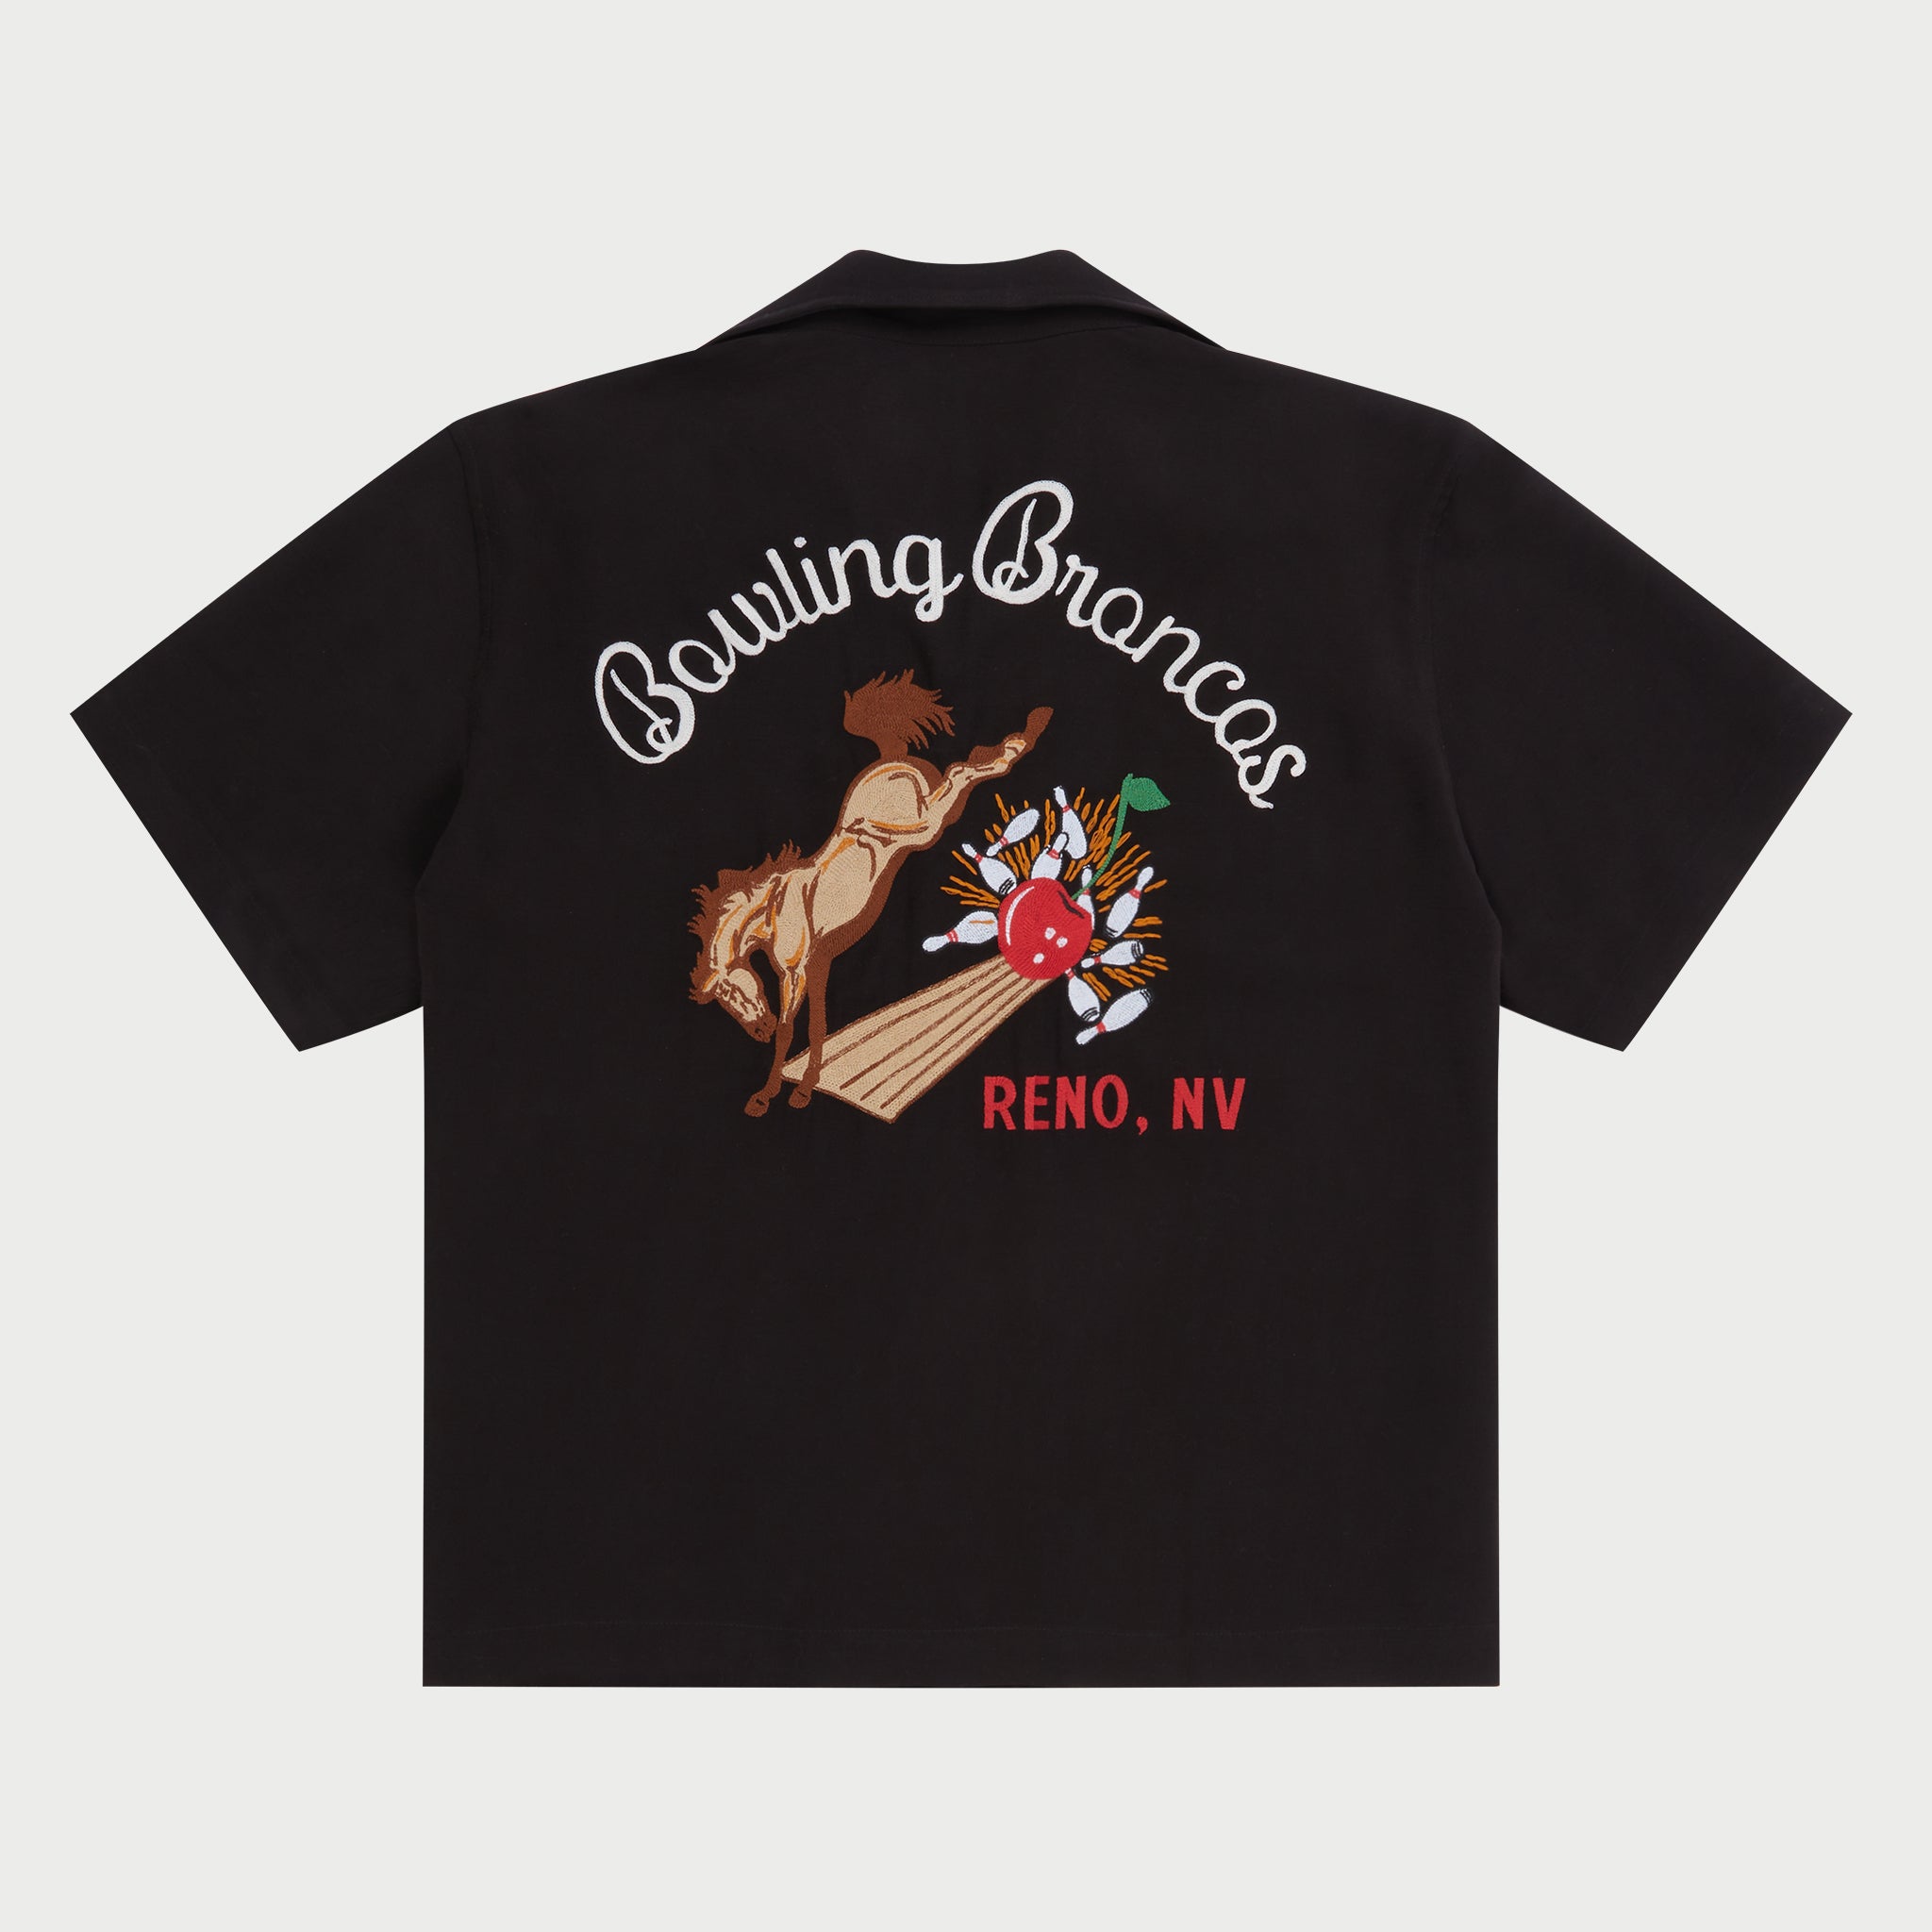 Bowling Broncos Bowling Shirt (Black)